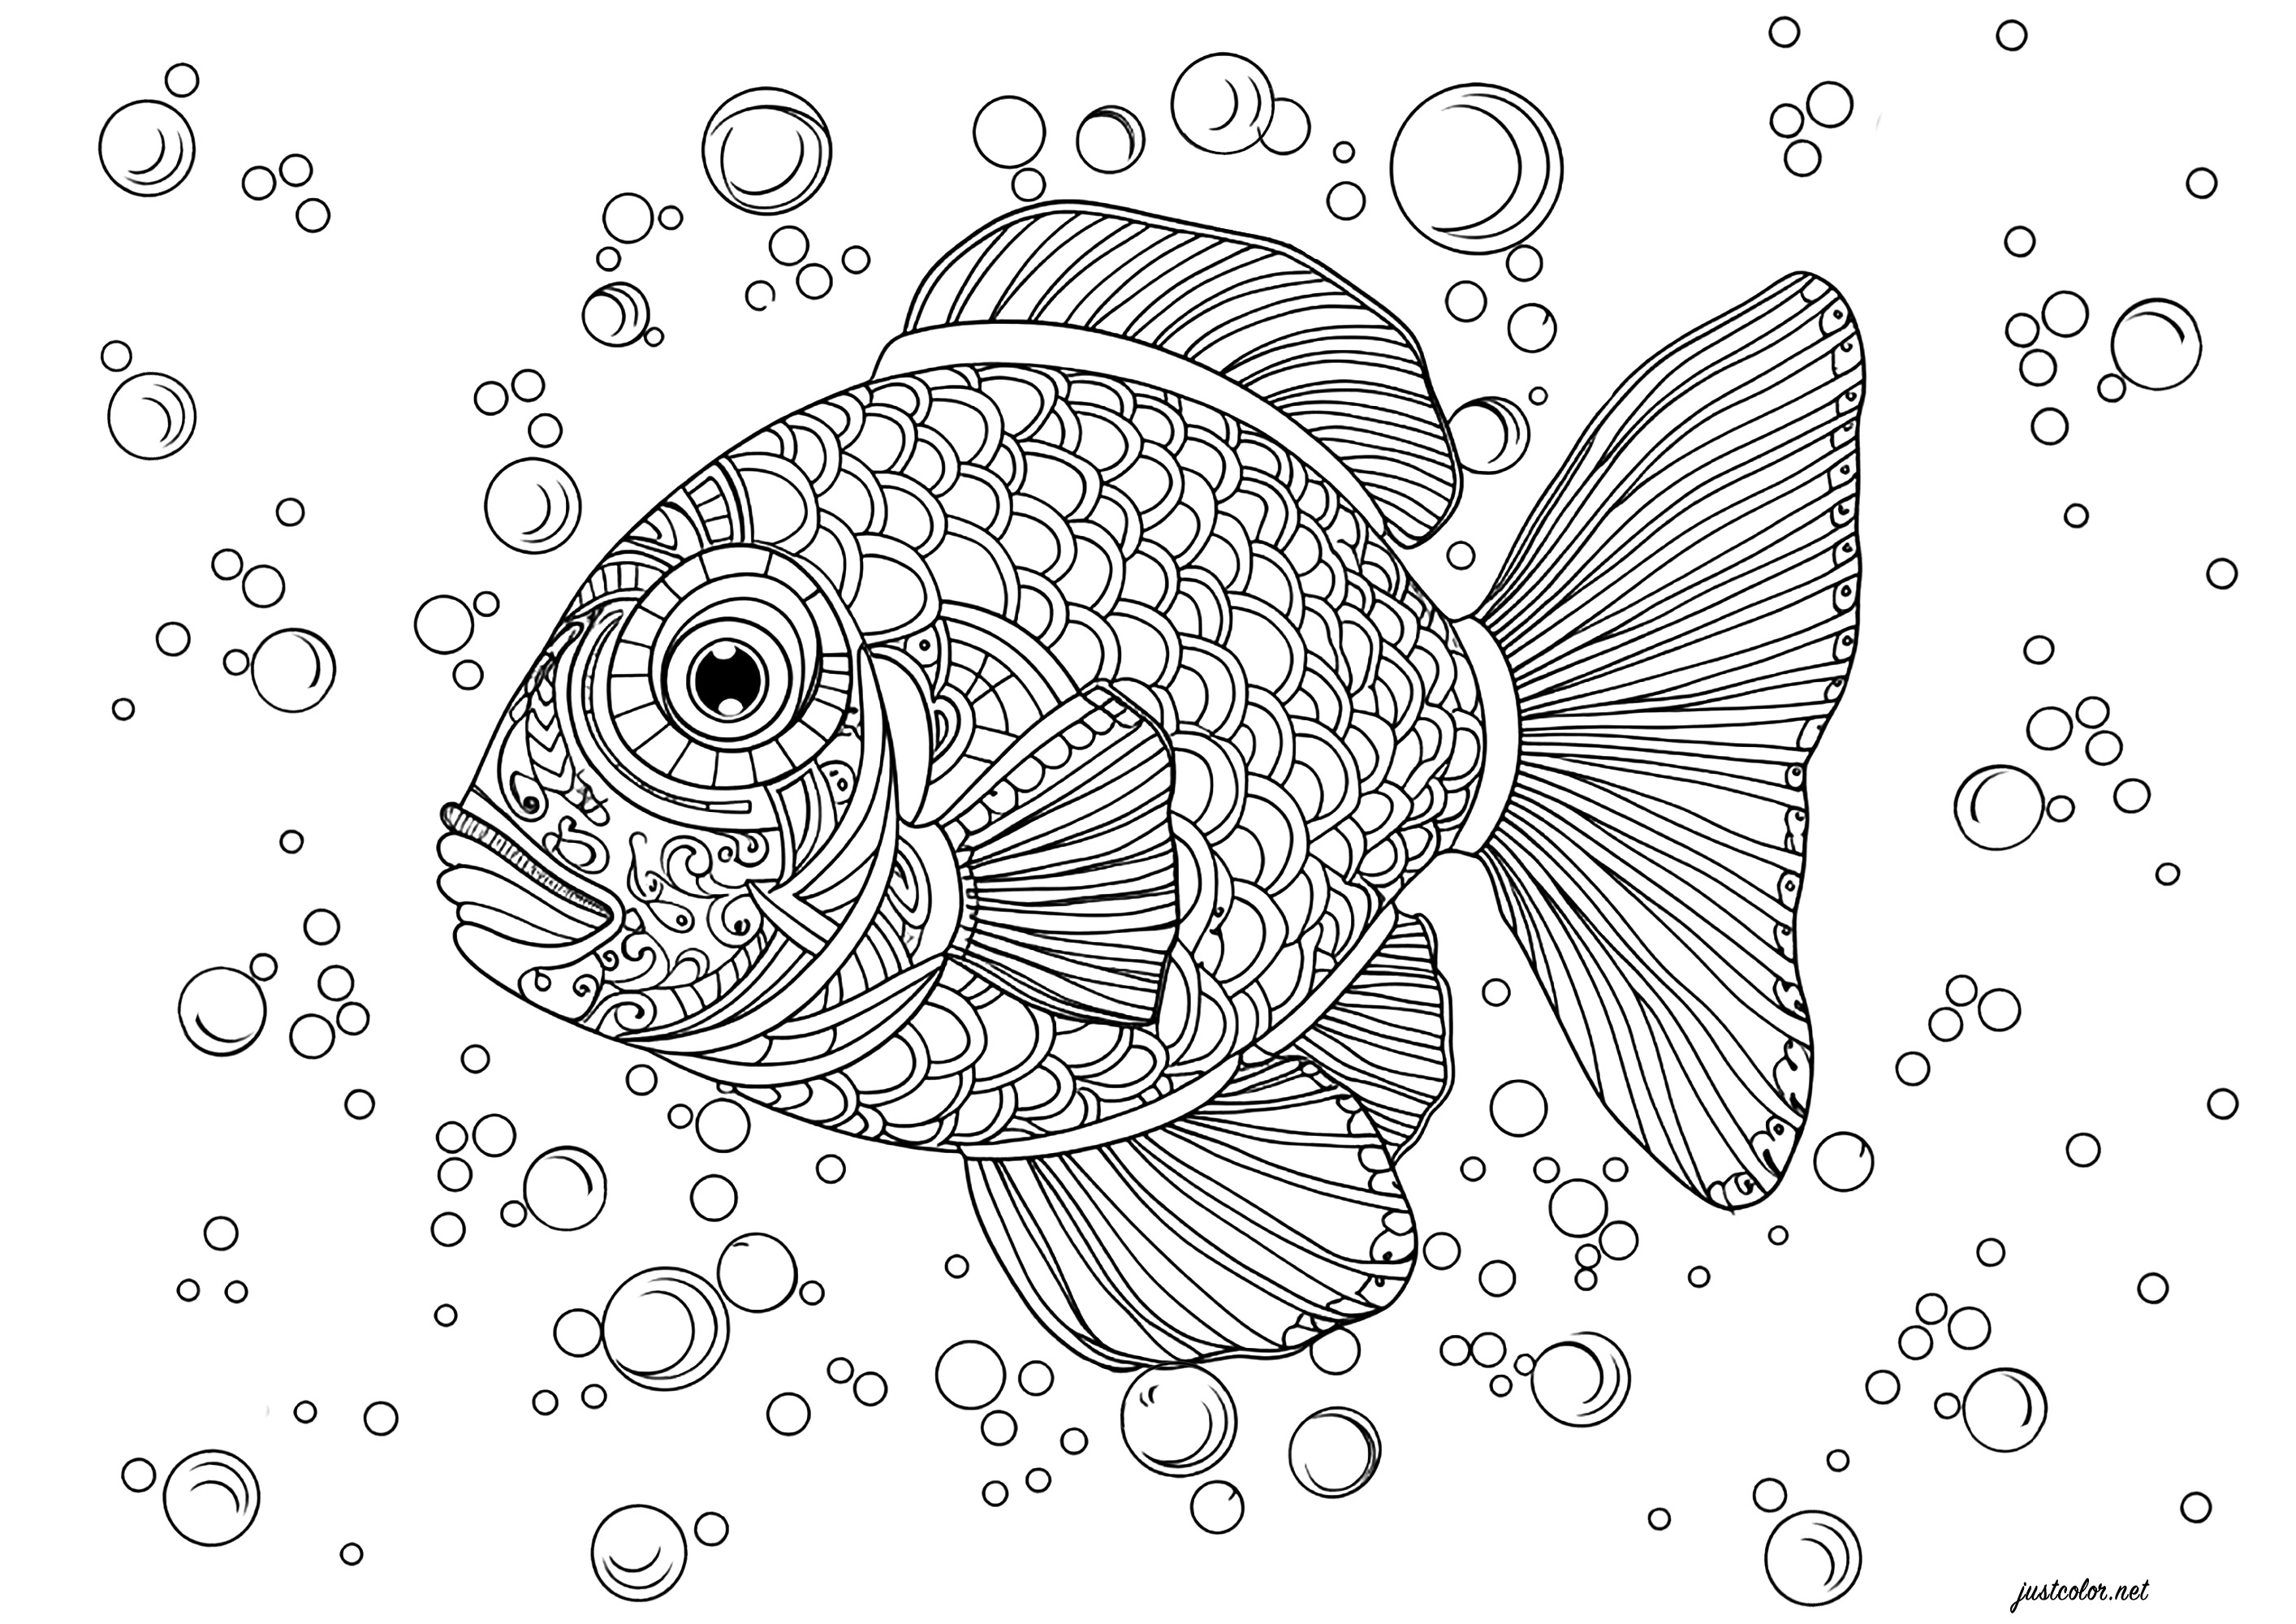 Un bellissimo pesce pieno di squame da colorare. Questo pesce dettagliato è circondato da bolle di diverse dimensioni